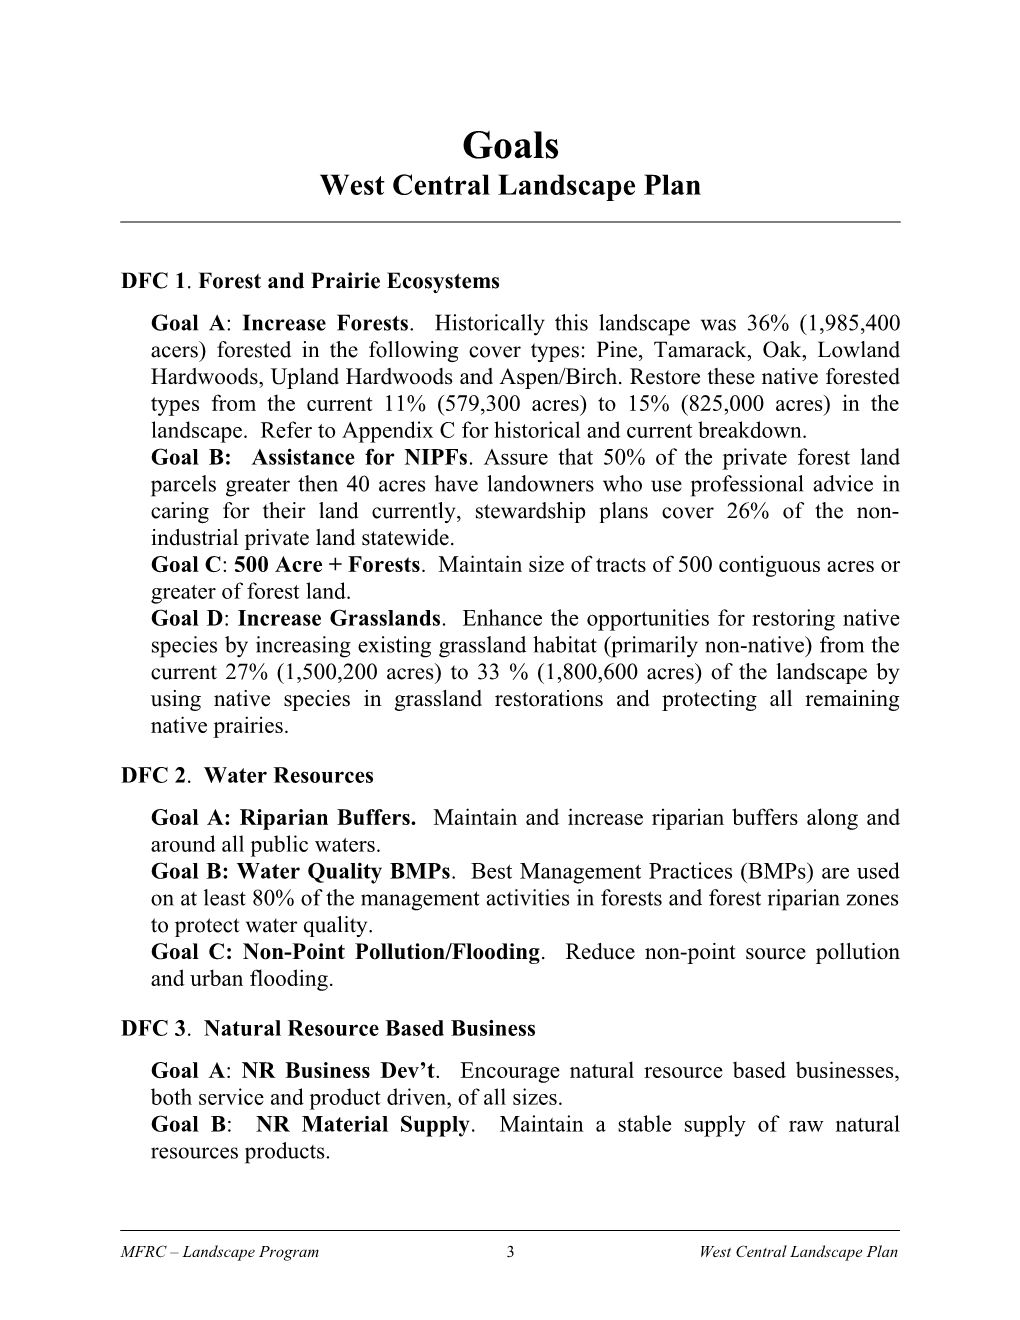 Strategic Policy Framework: West Central Landscape Plan